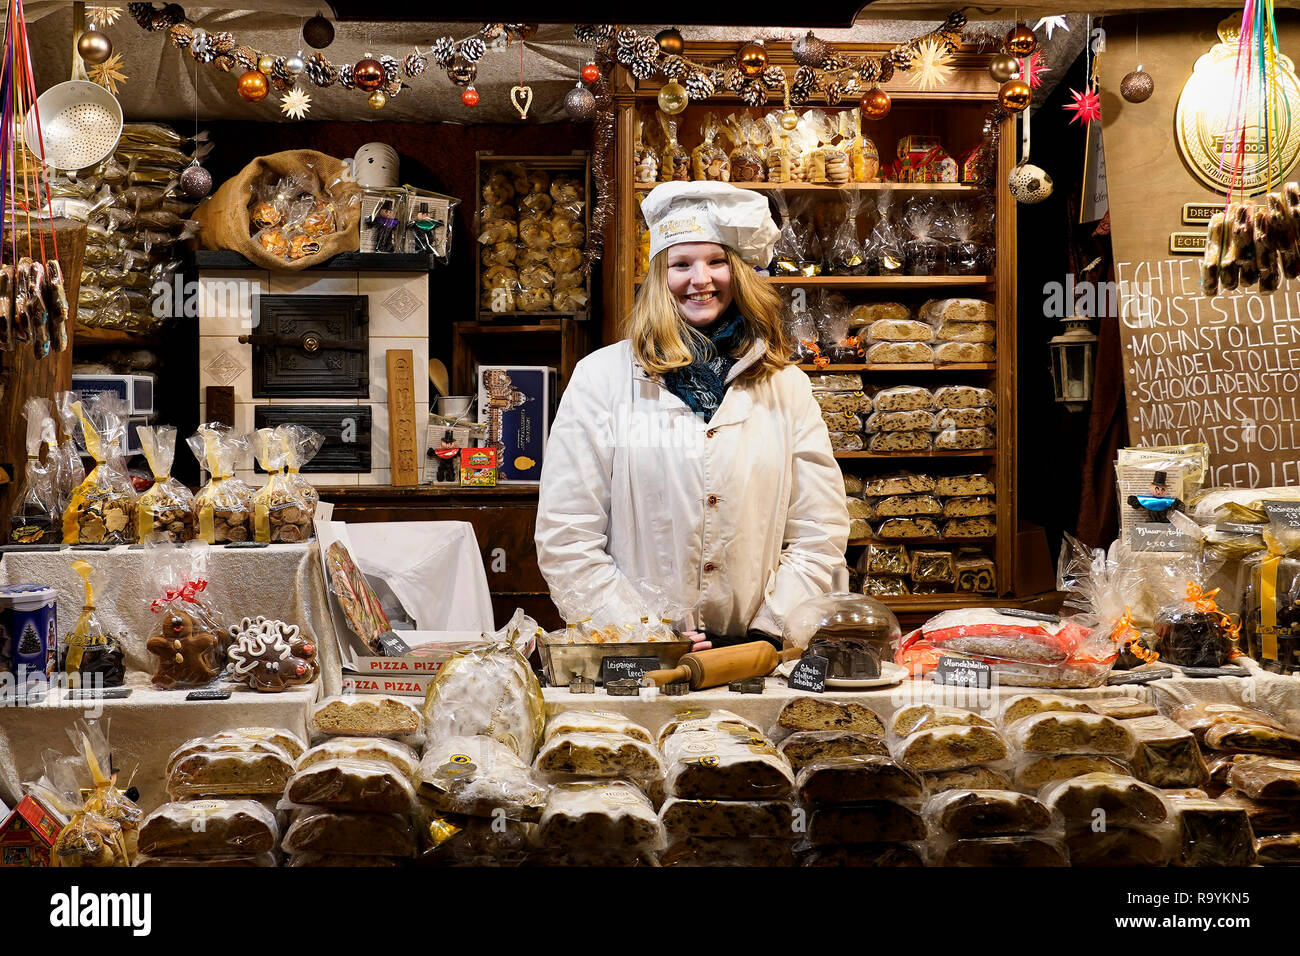 Une vendeuse de vente habituel Noël nourriture comme le traditionnel pain aux fruits (stollen) derrière son étal au marché de Noël à Leipzig, Allemagne. Banque D'Images